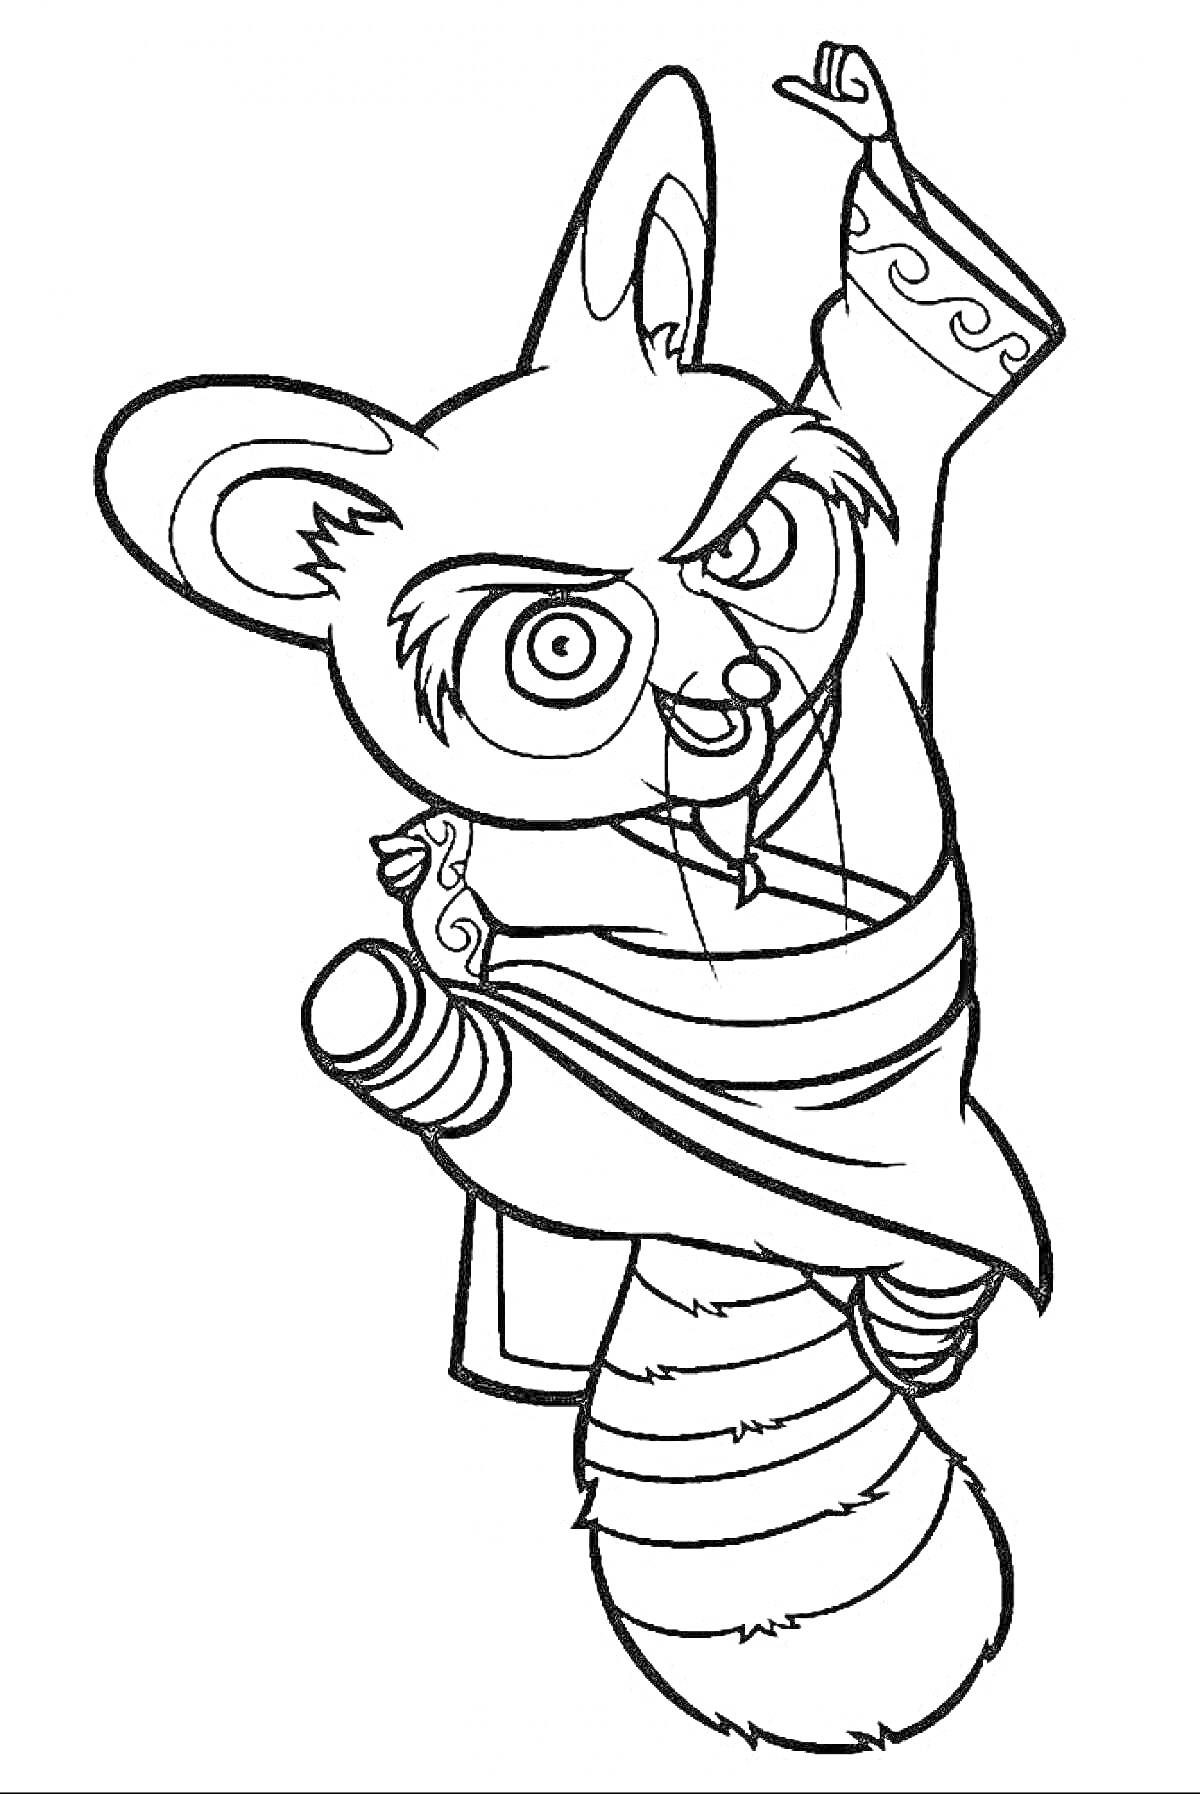 Раскраска Пандовая антропоморфная фигура в боевой стойке с поднятой рукой и хвостом полосатым